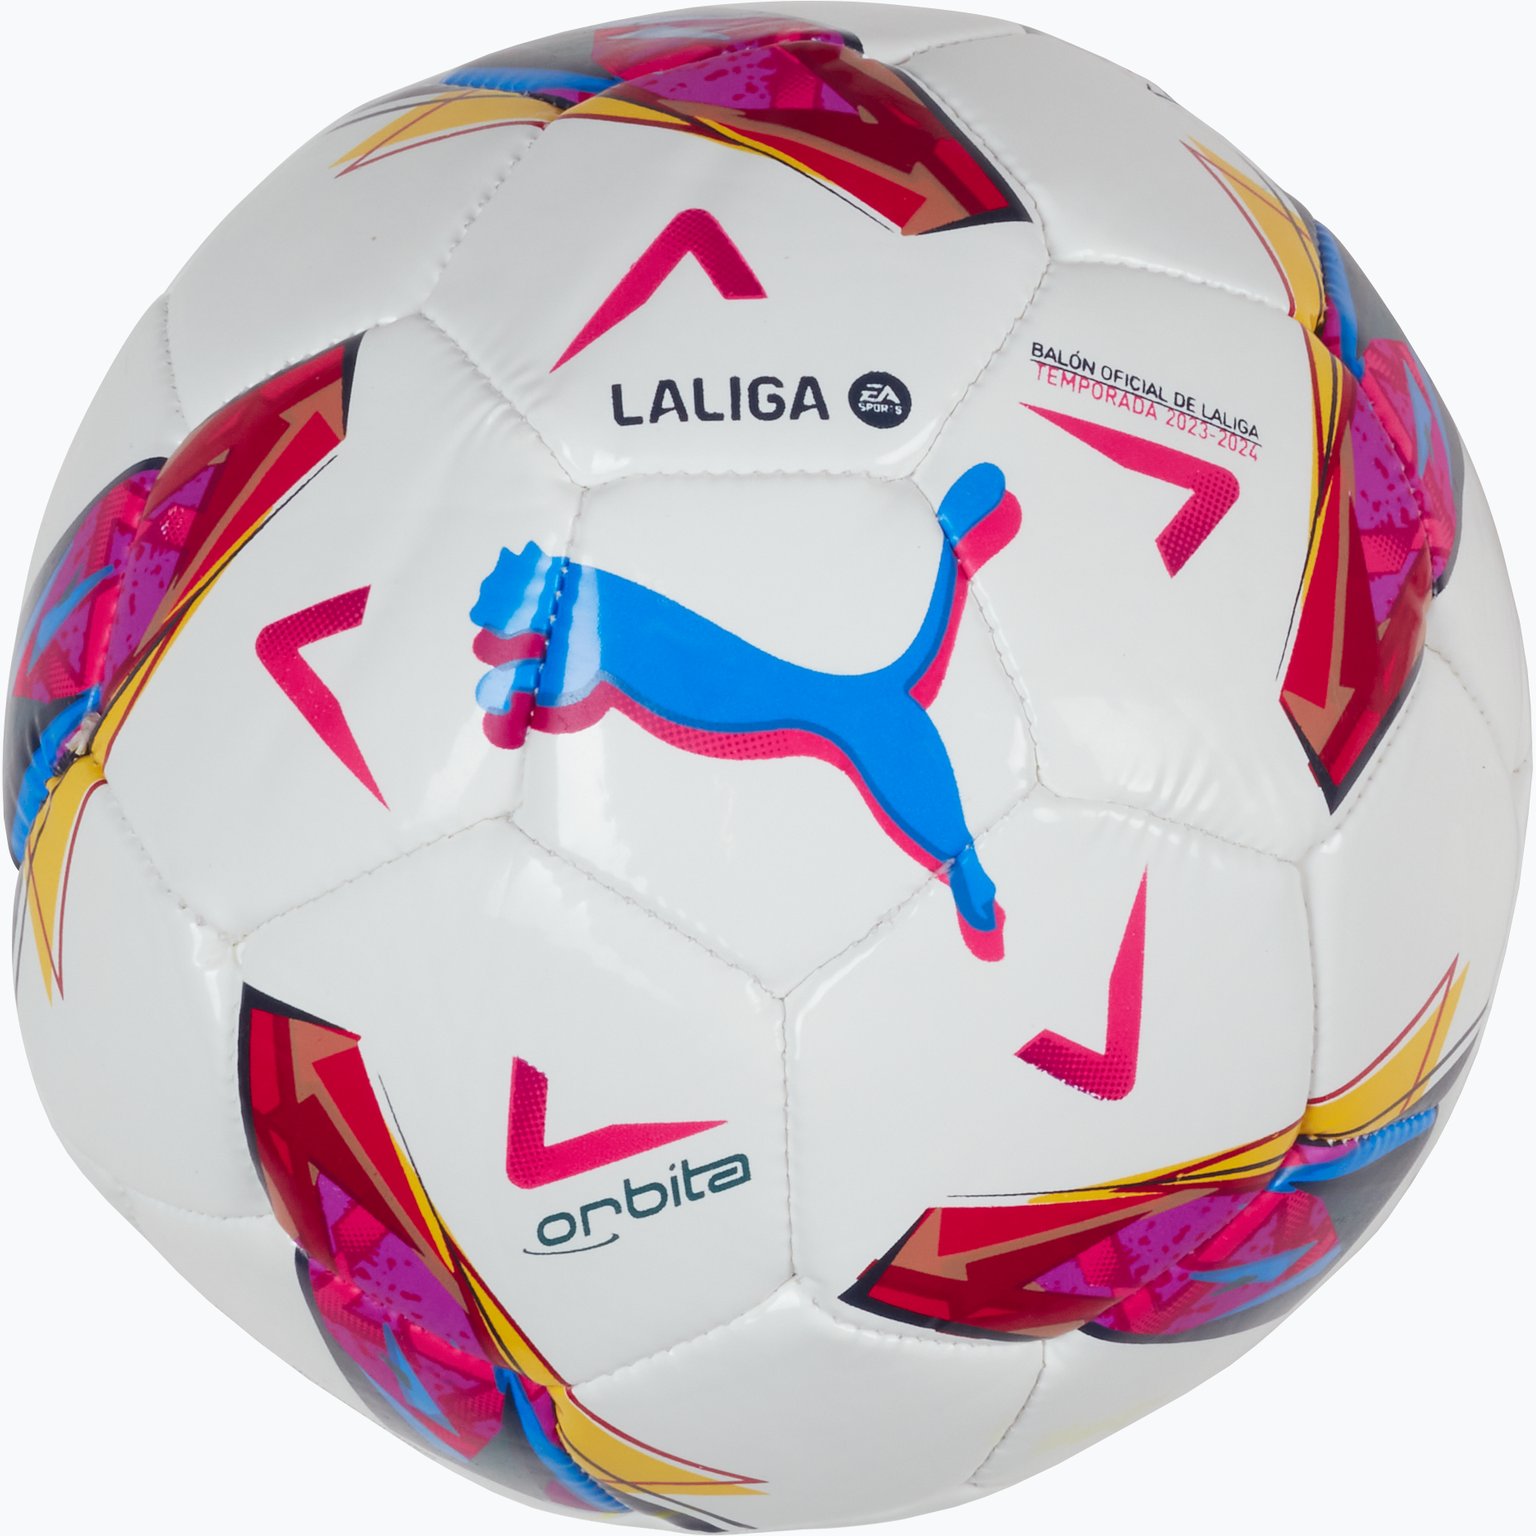 Orbita LaLiga 1 MS Mini fotboll